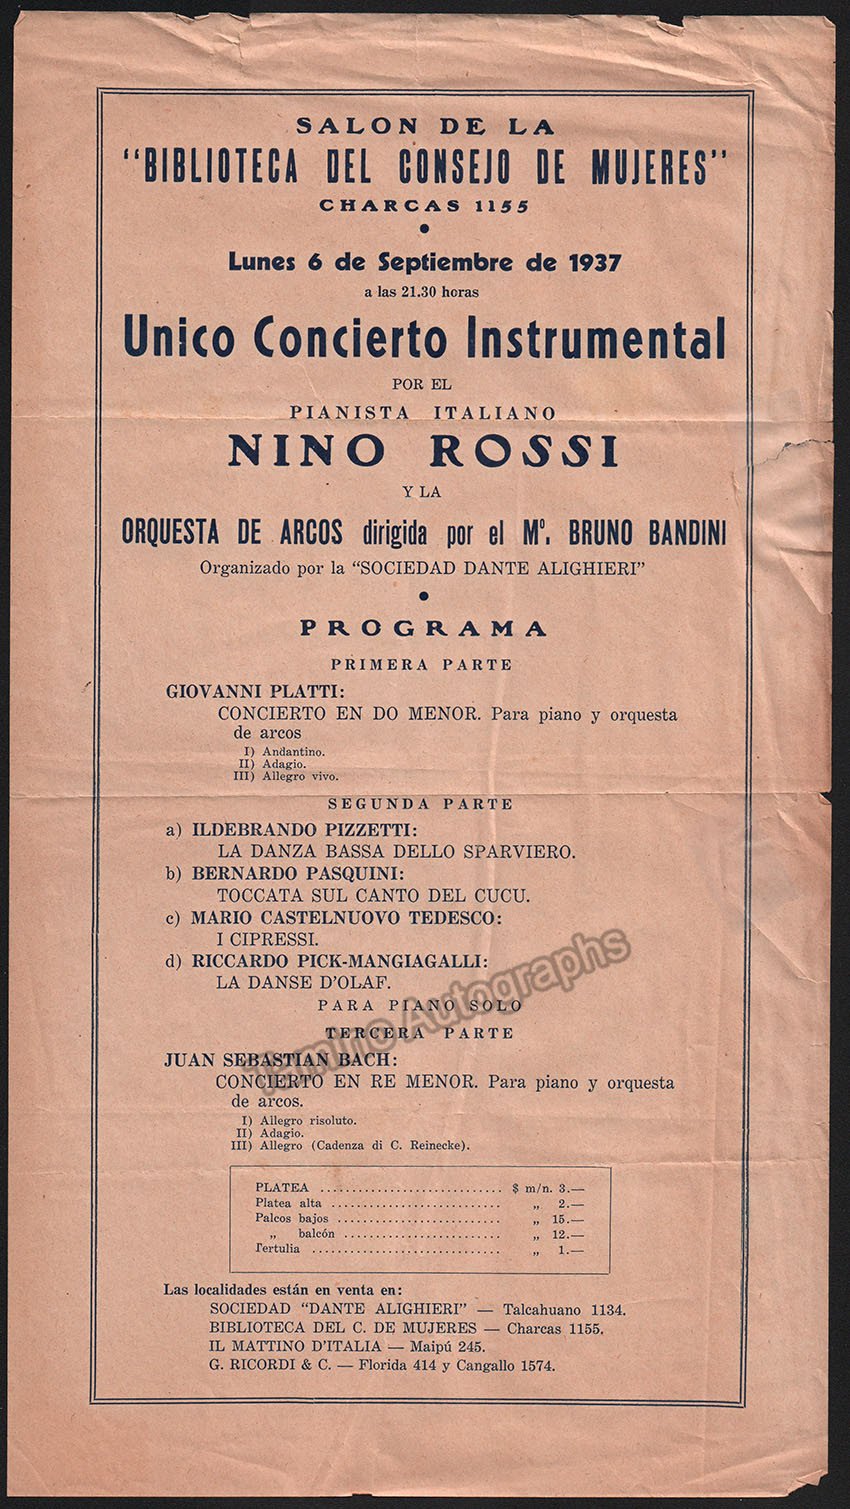 Nino Rossi recital unsigned playbill WM 724f7aad 70b7 490f 8ce8 e4a8a70567a5